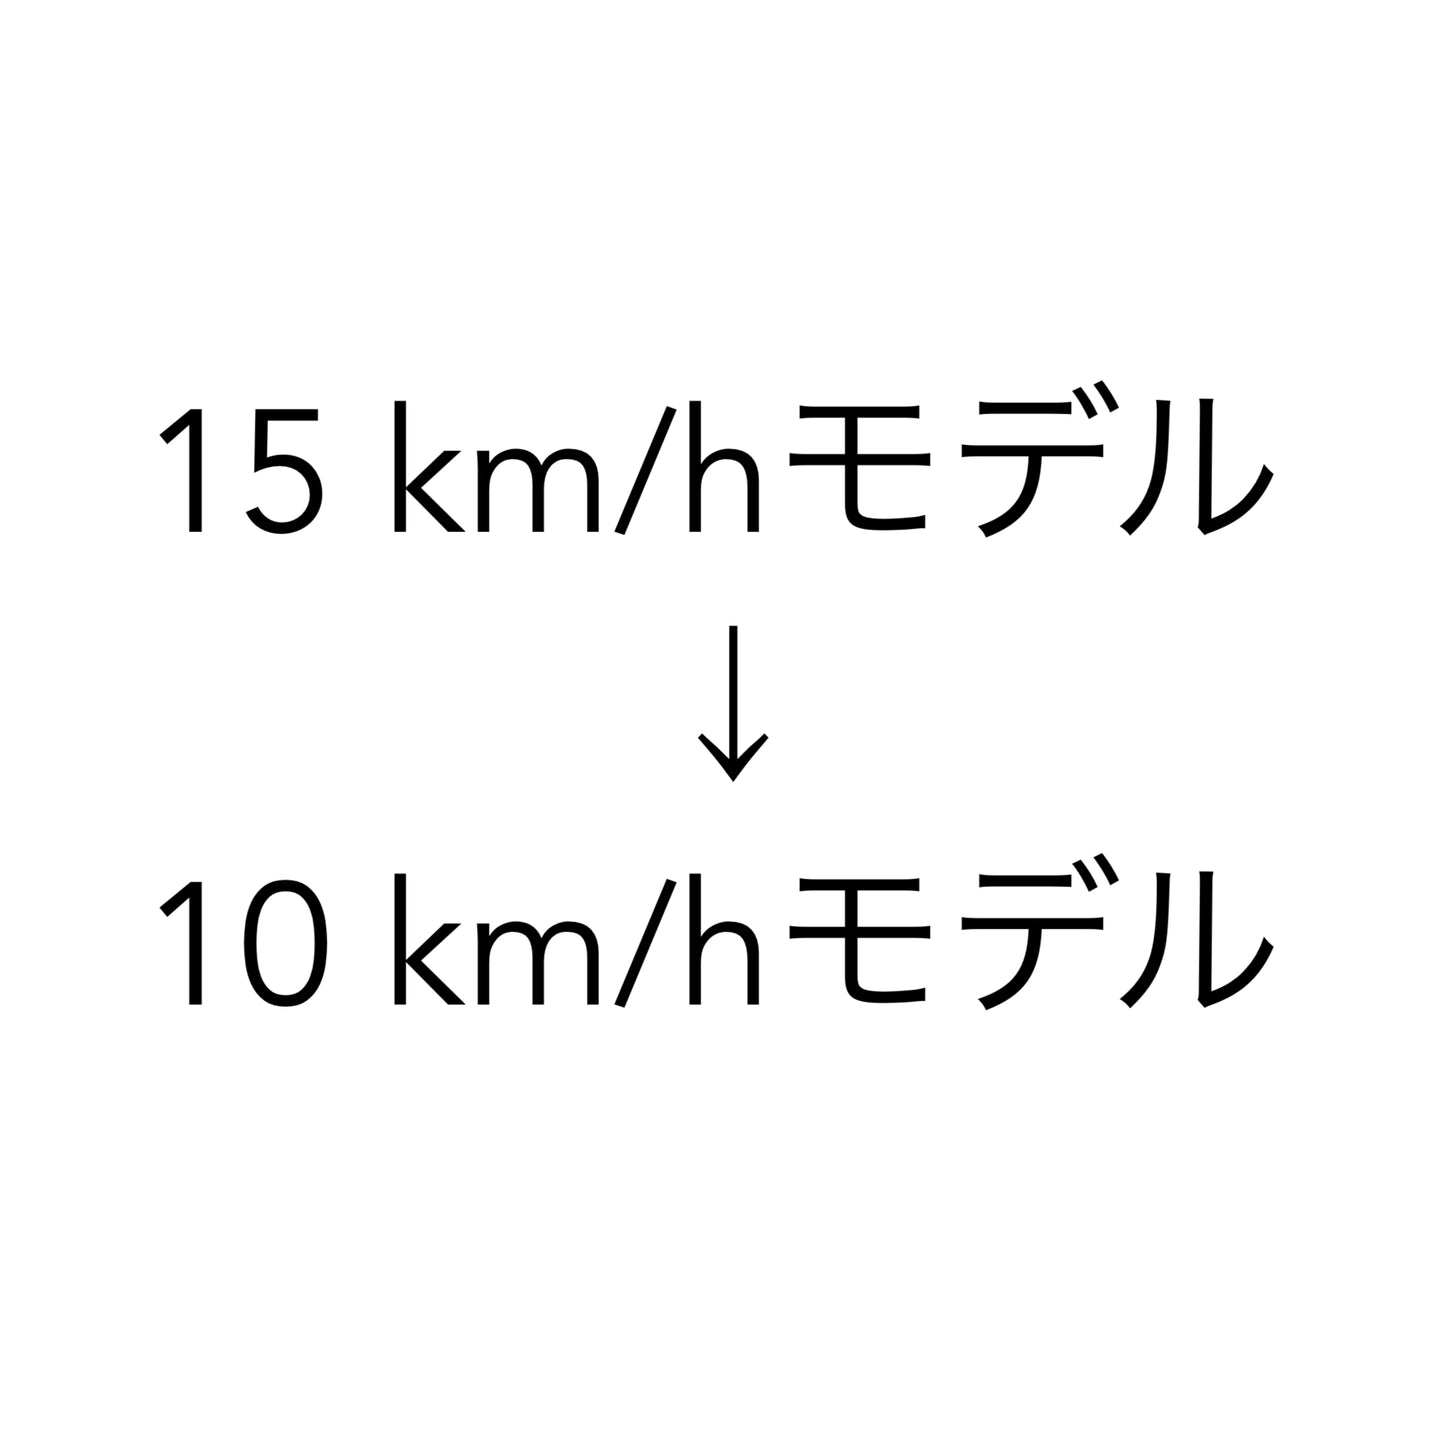 ソフトウェア更新プログラム(15 km/h モデル  → 10 km/h モデル)